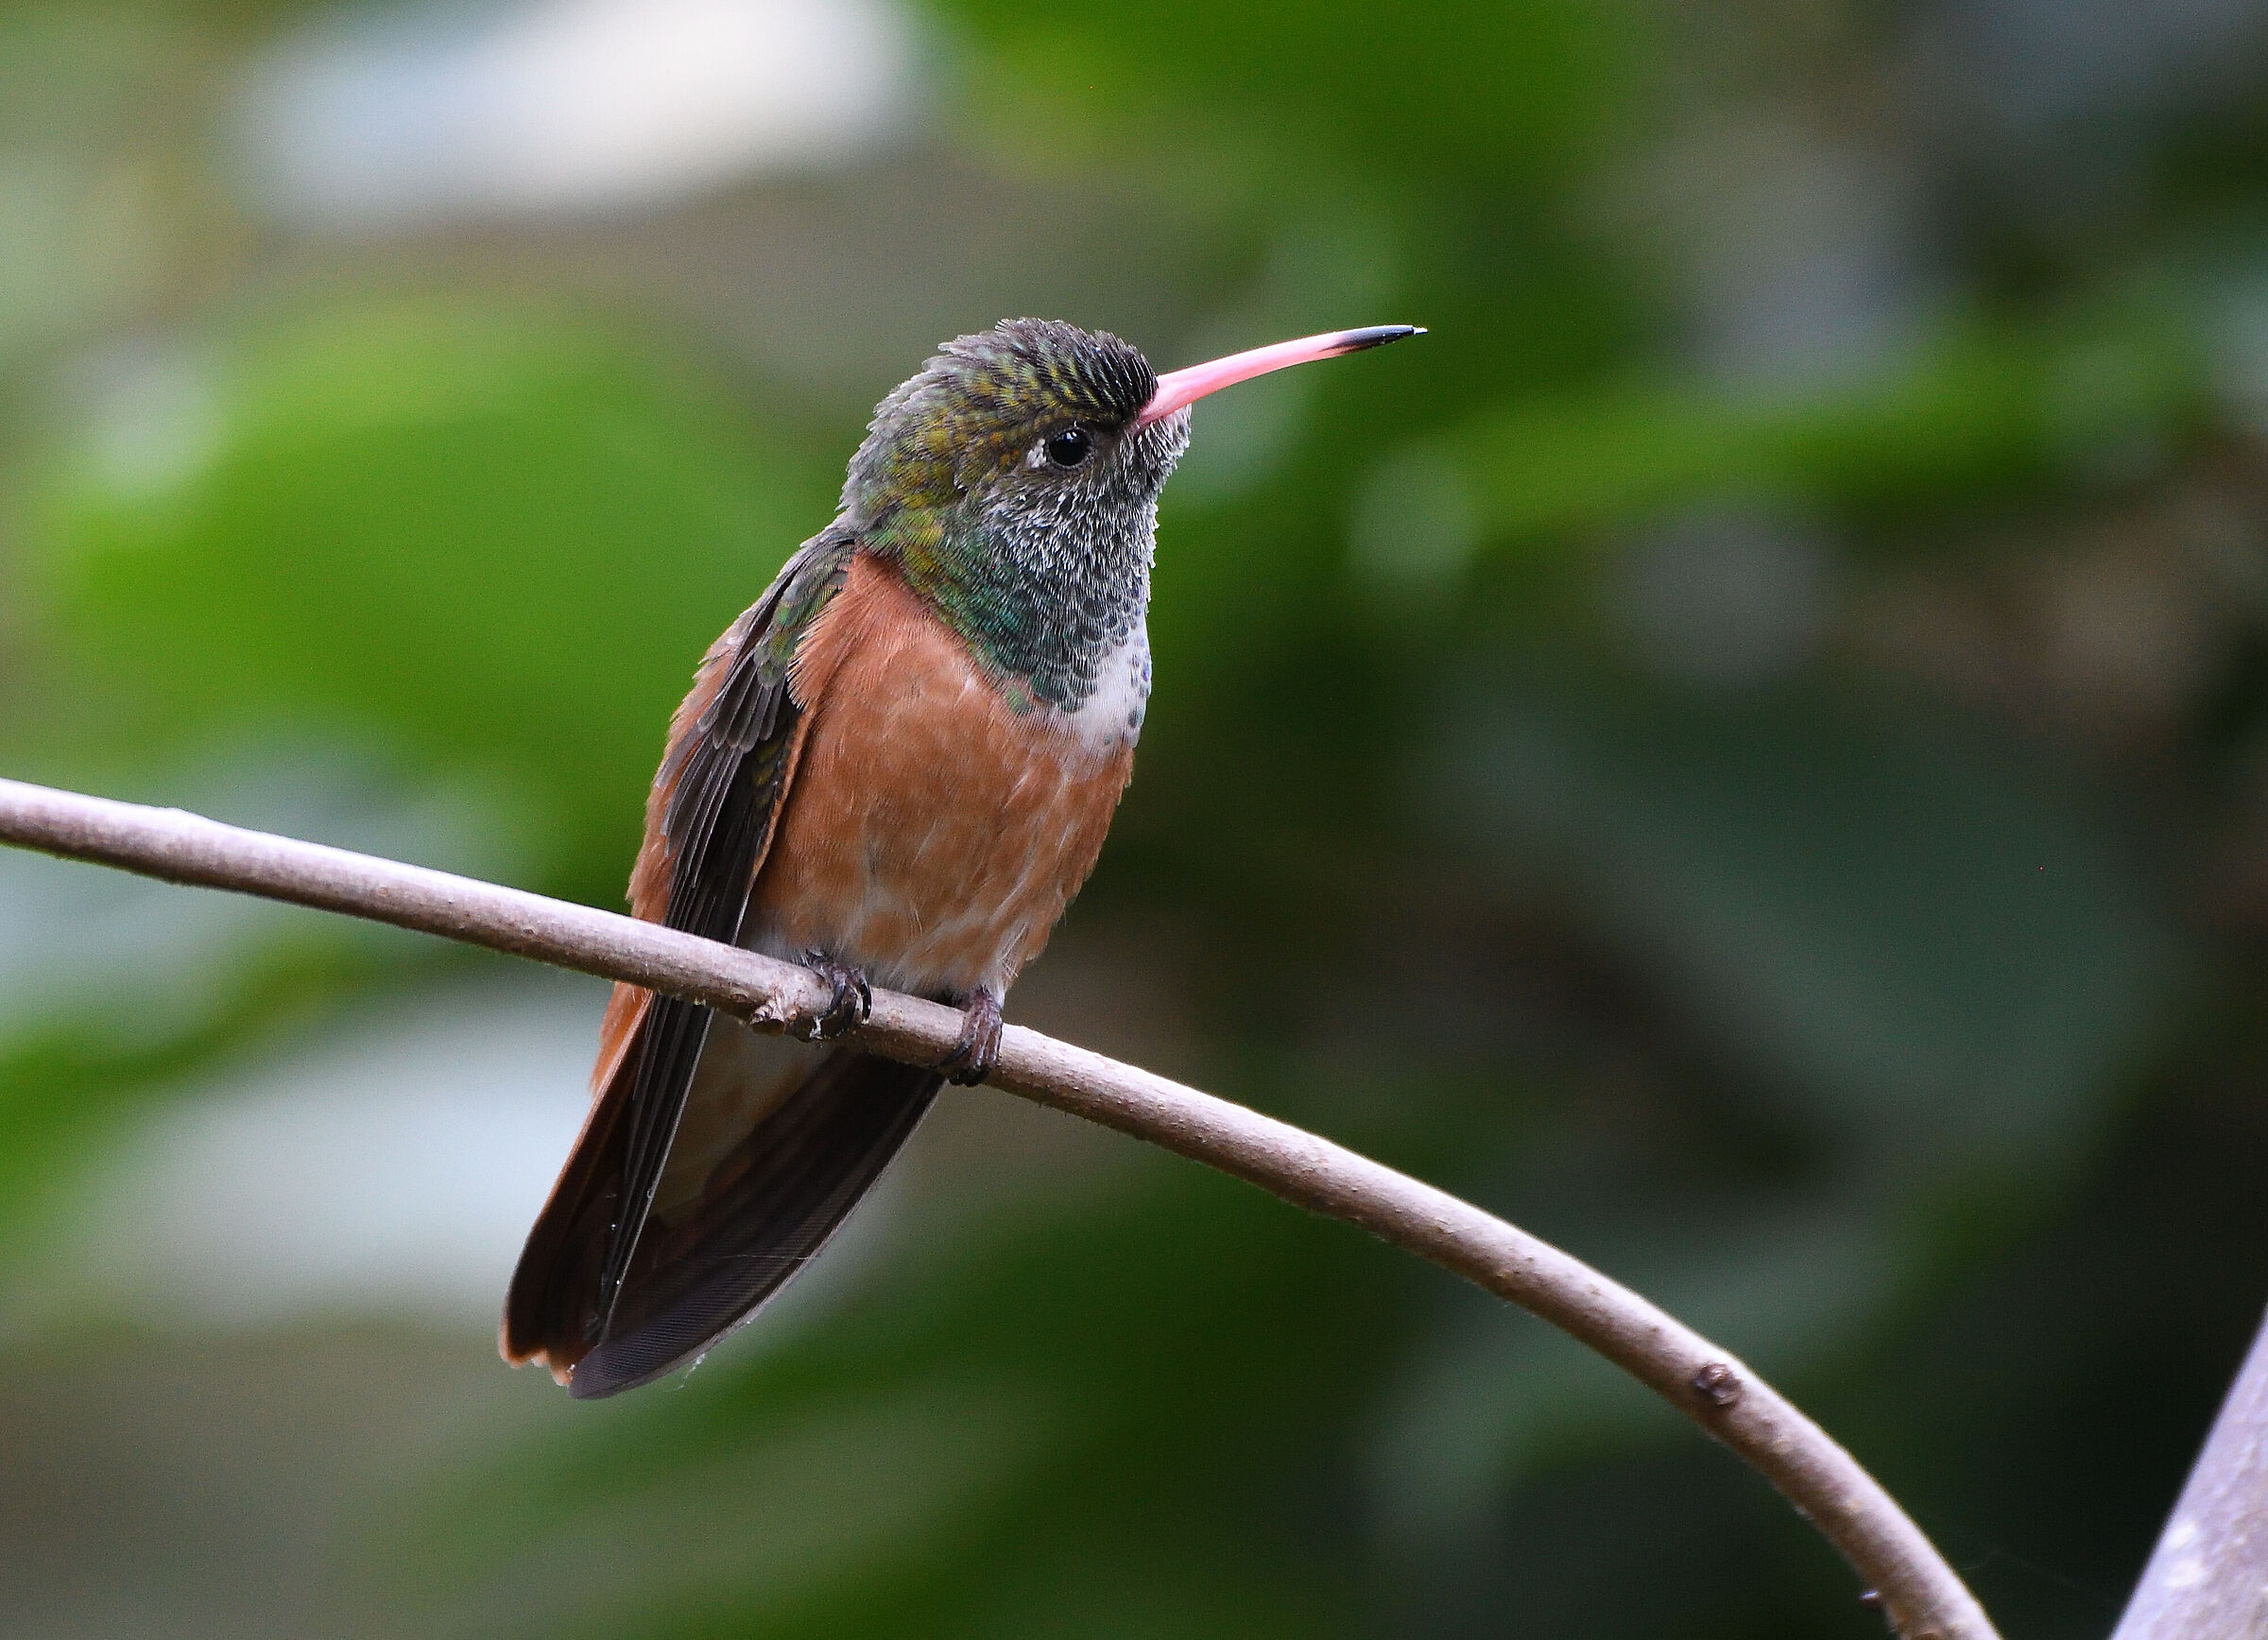 Curious hummingbird...